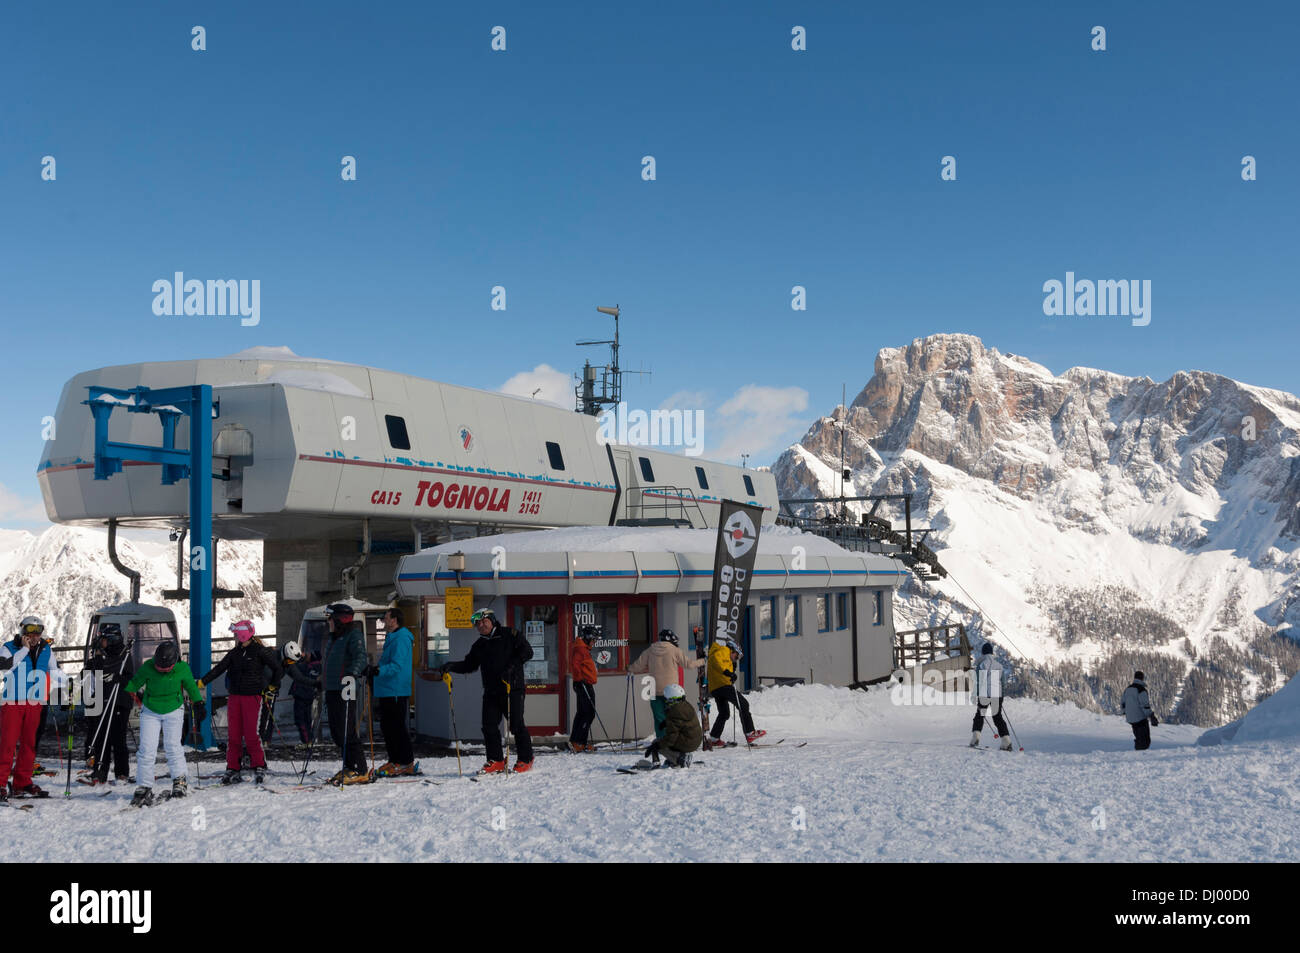 Tognola ski lift, San Martino di Castrozza, Dolomiti. Foto Stock